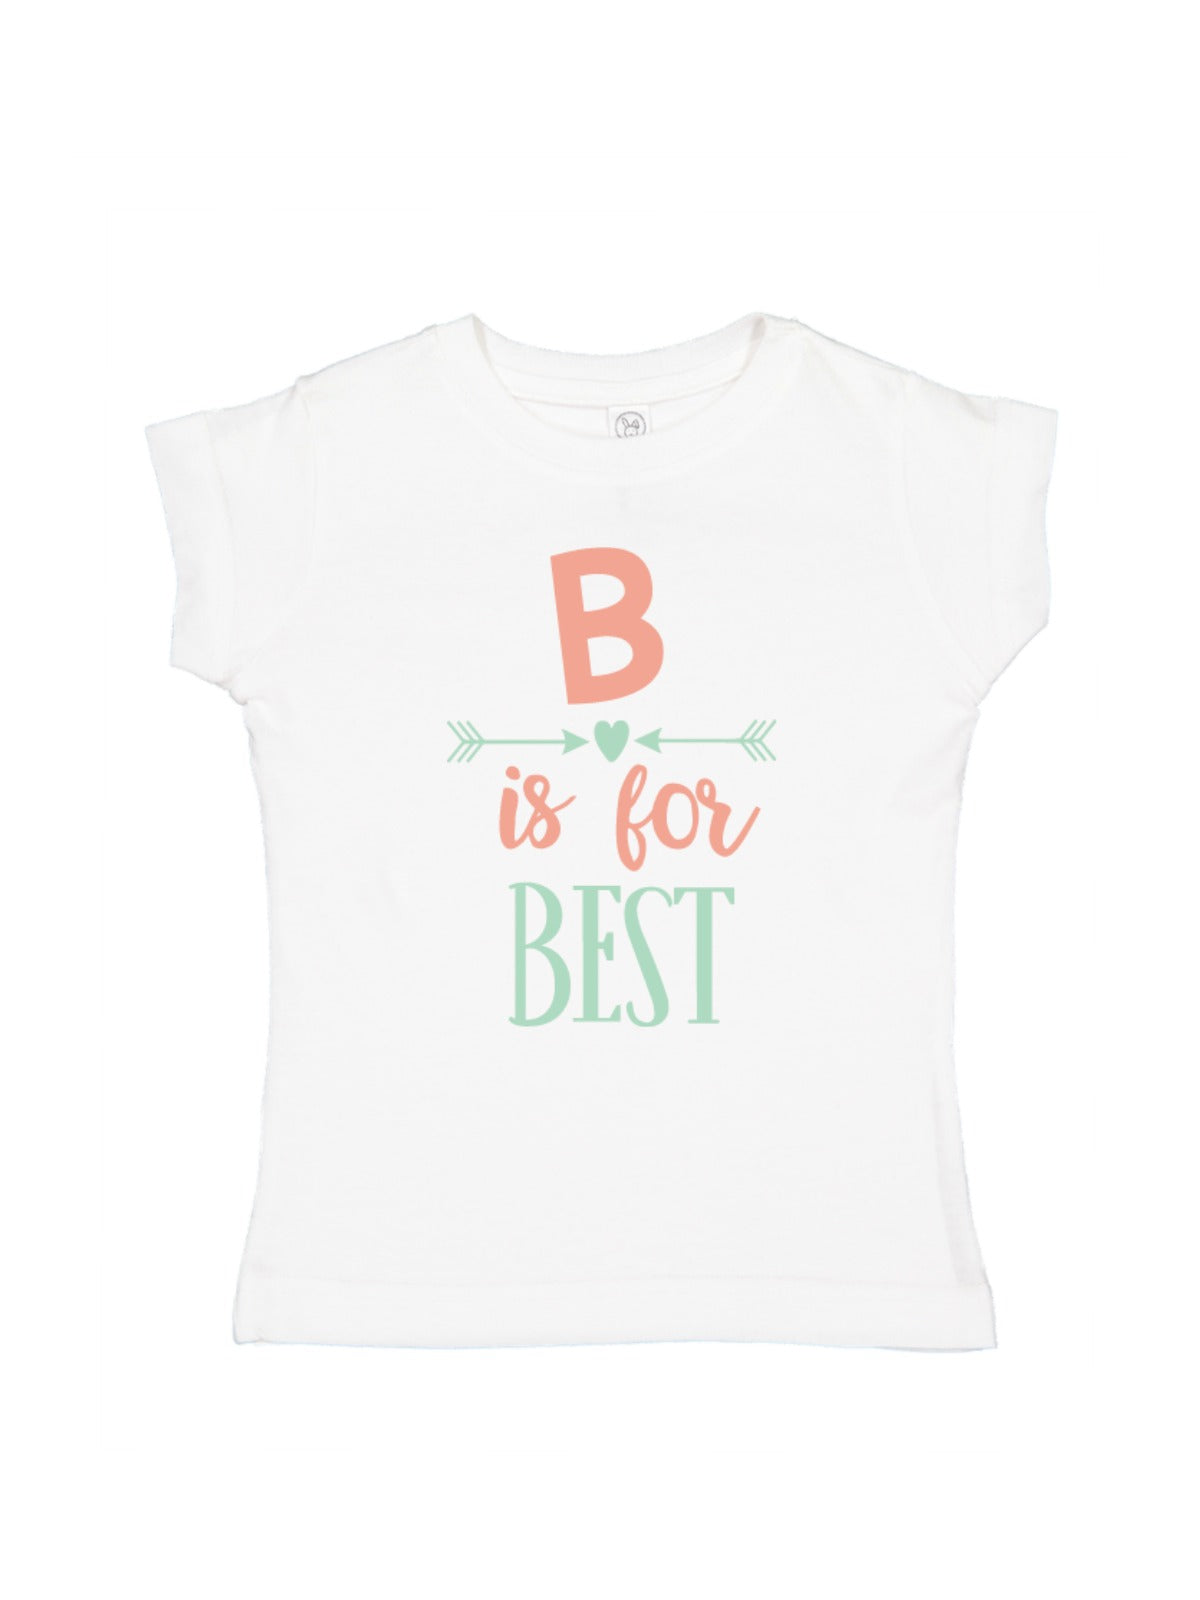 B is for Best Girls T-Shirt Matching Best Friends Shirt